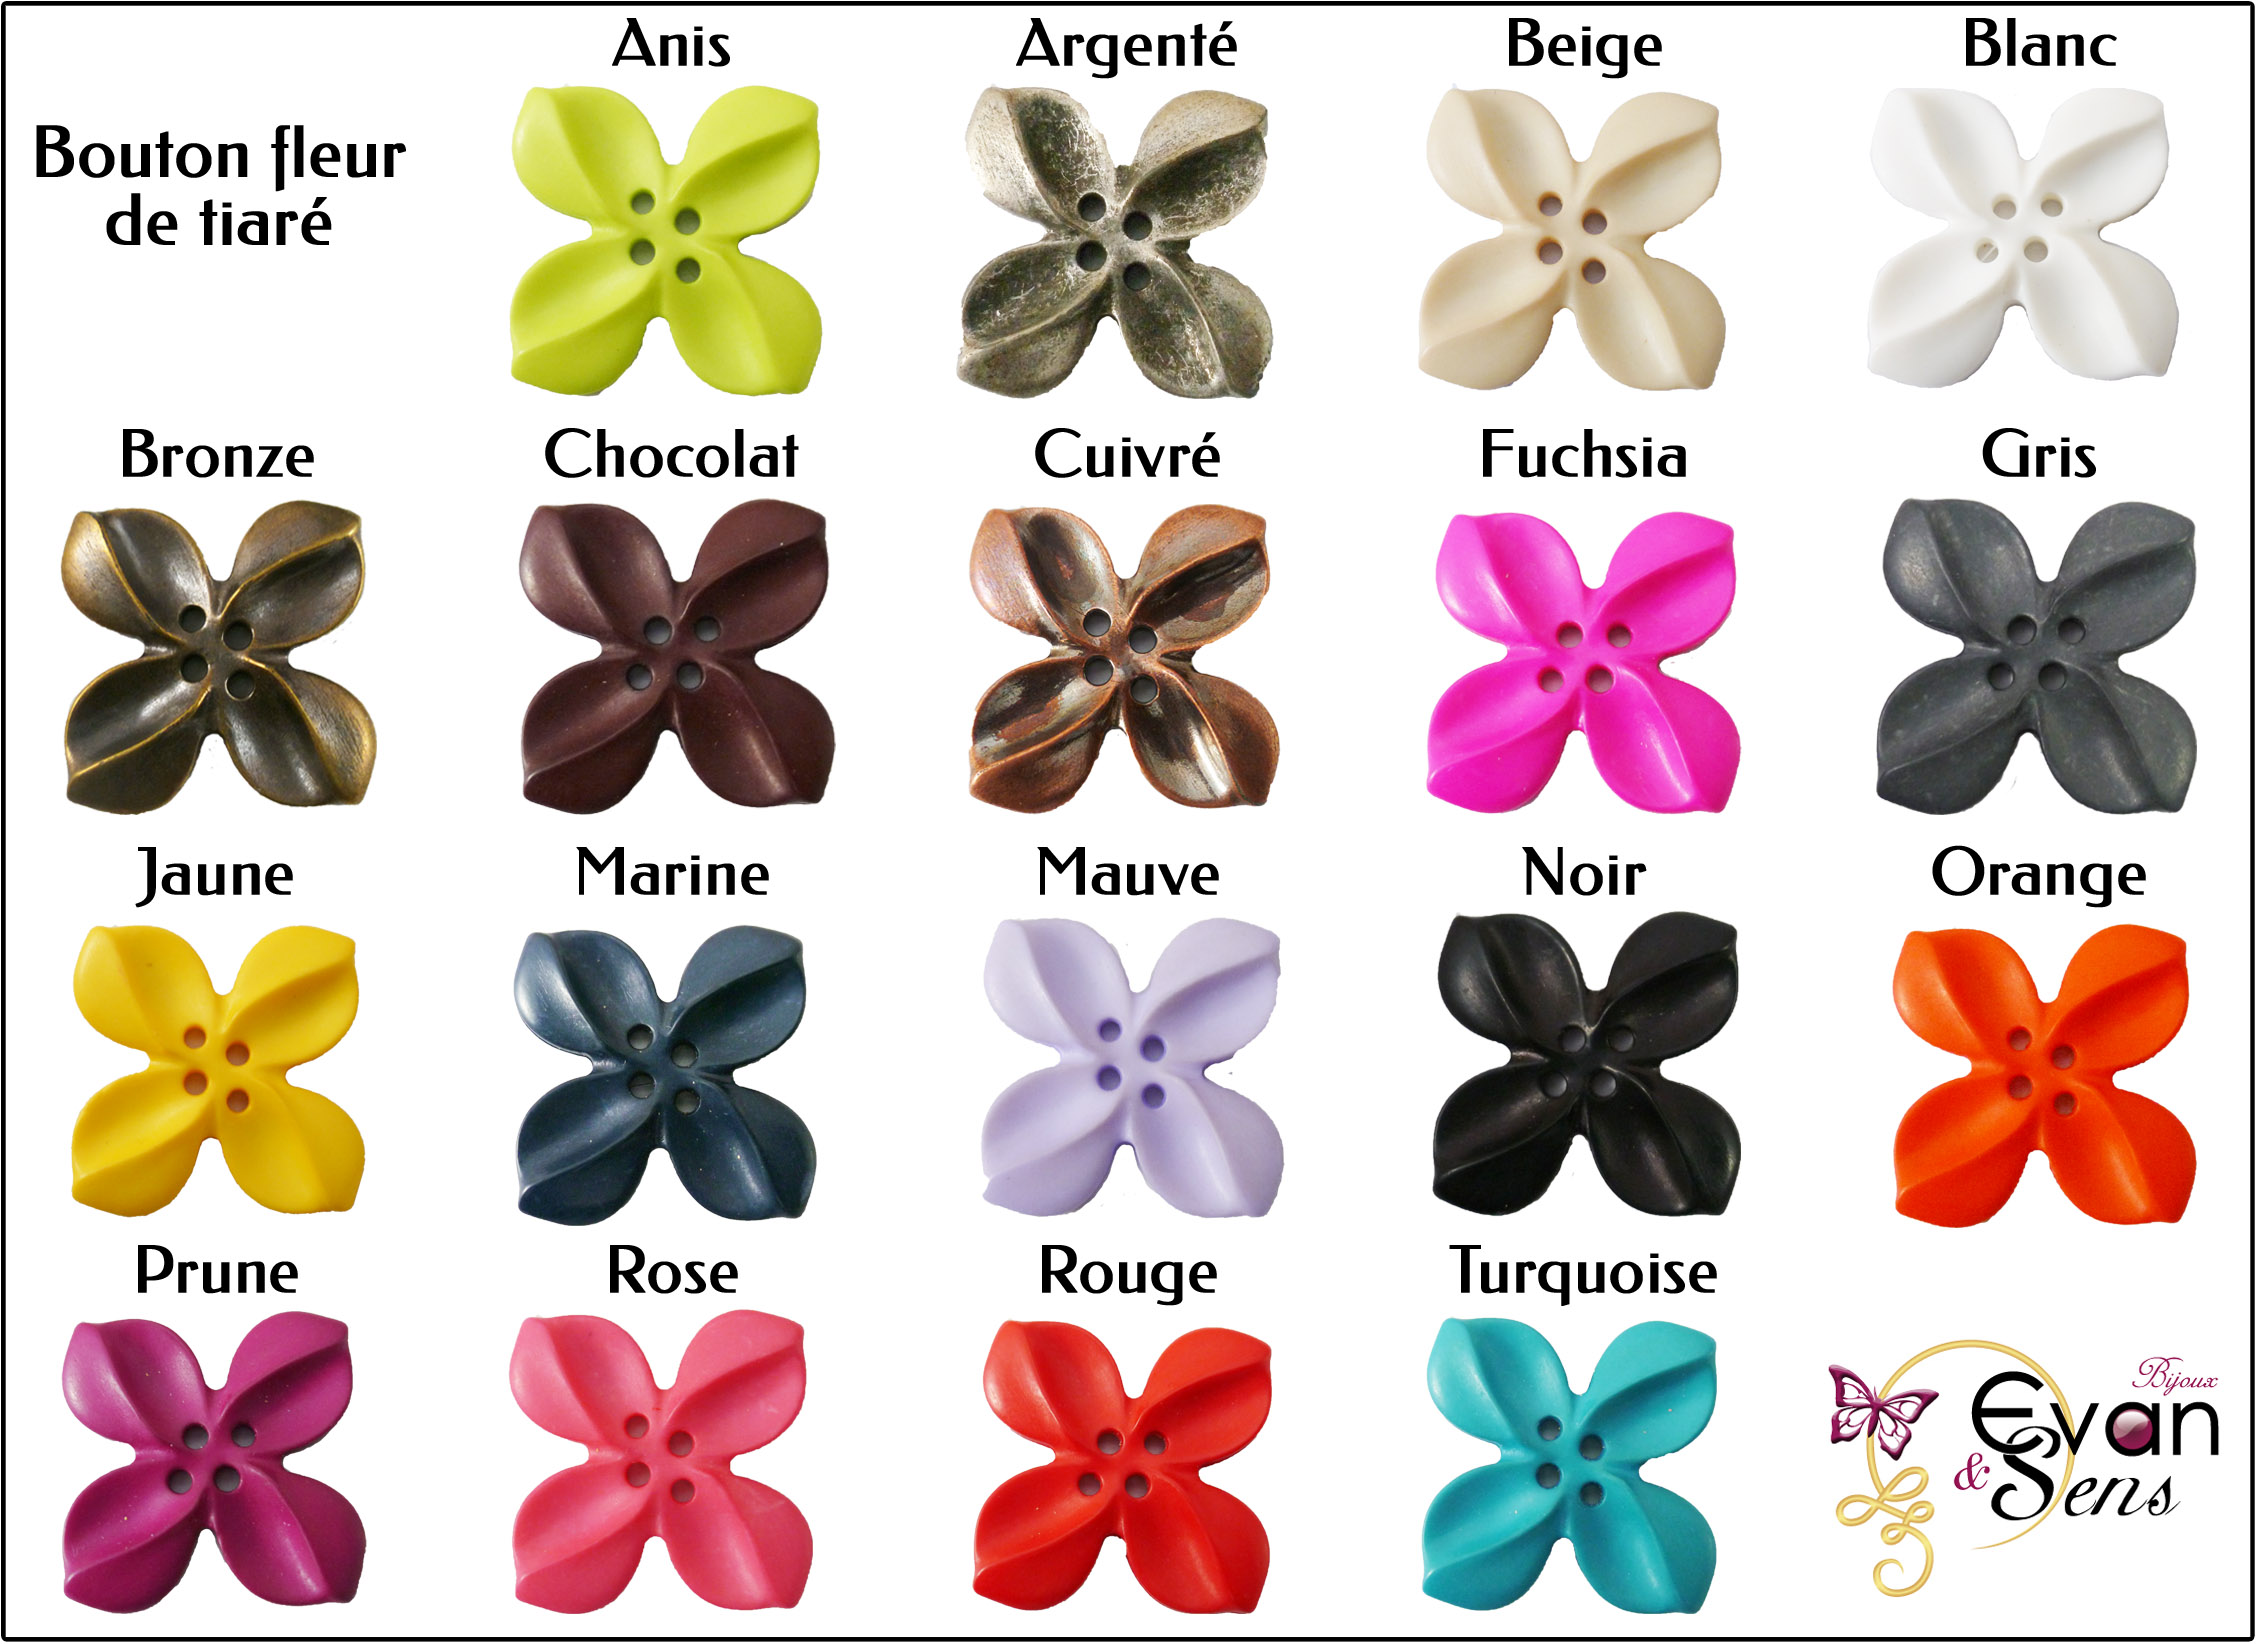 Plaquette de couleurs bouton fleur de tiaré